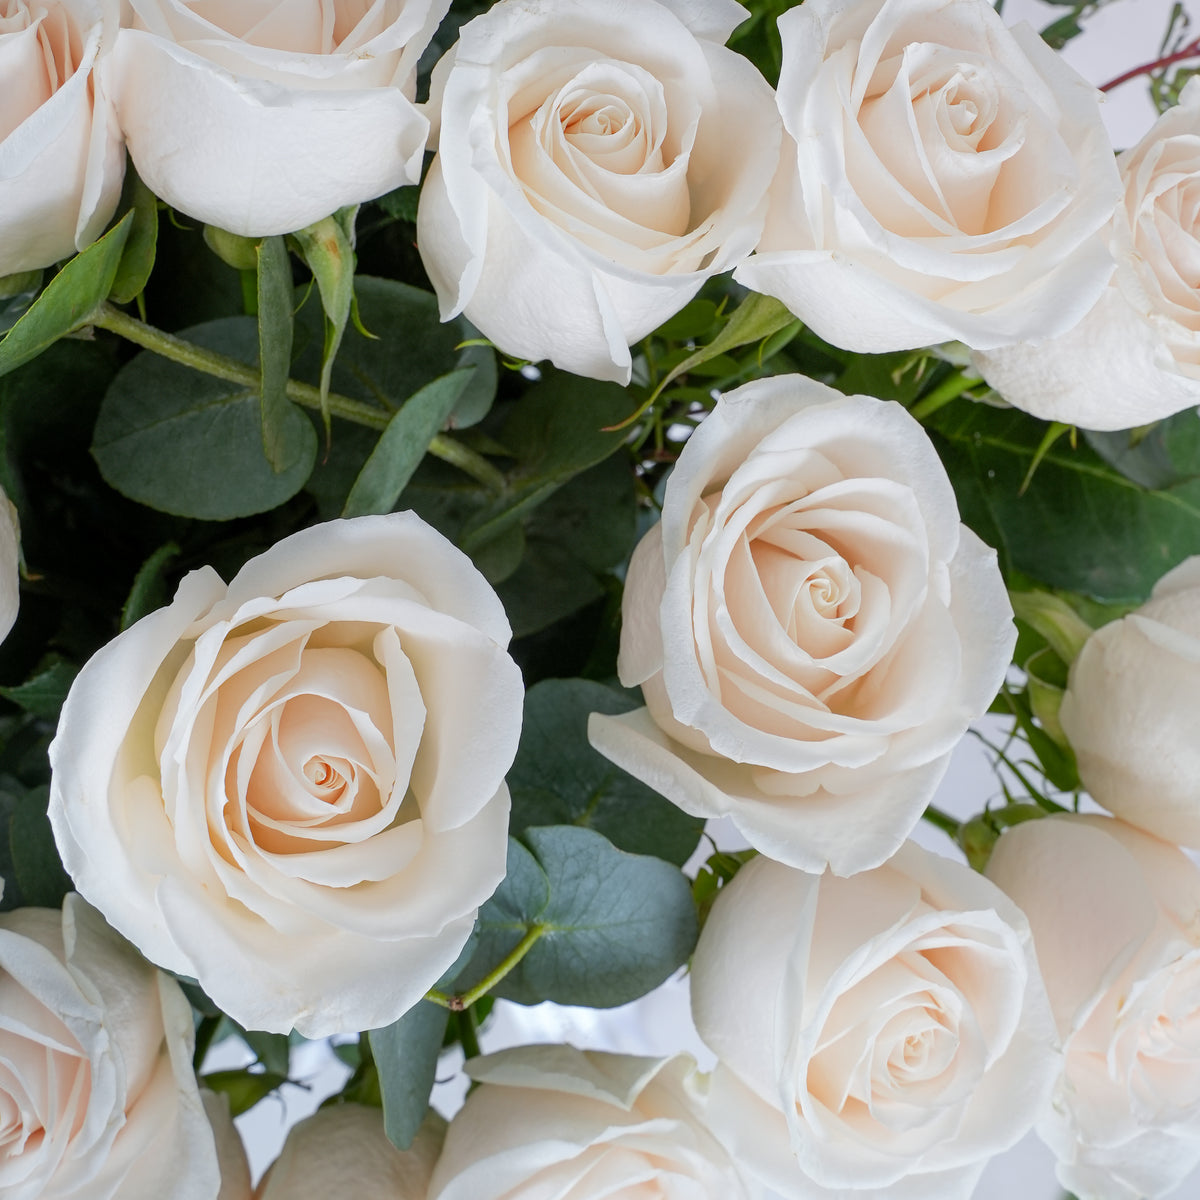 50 White Roses - Vase